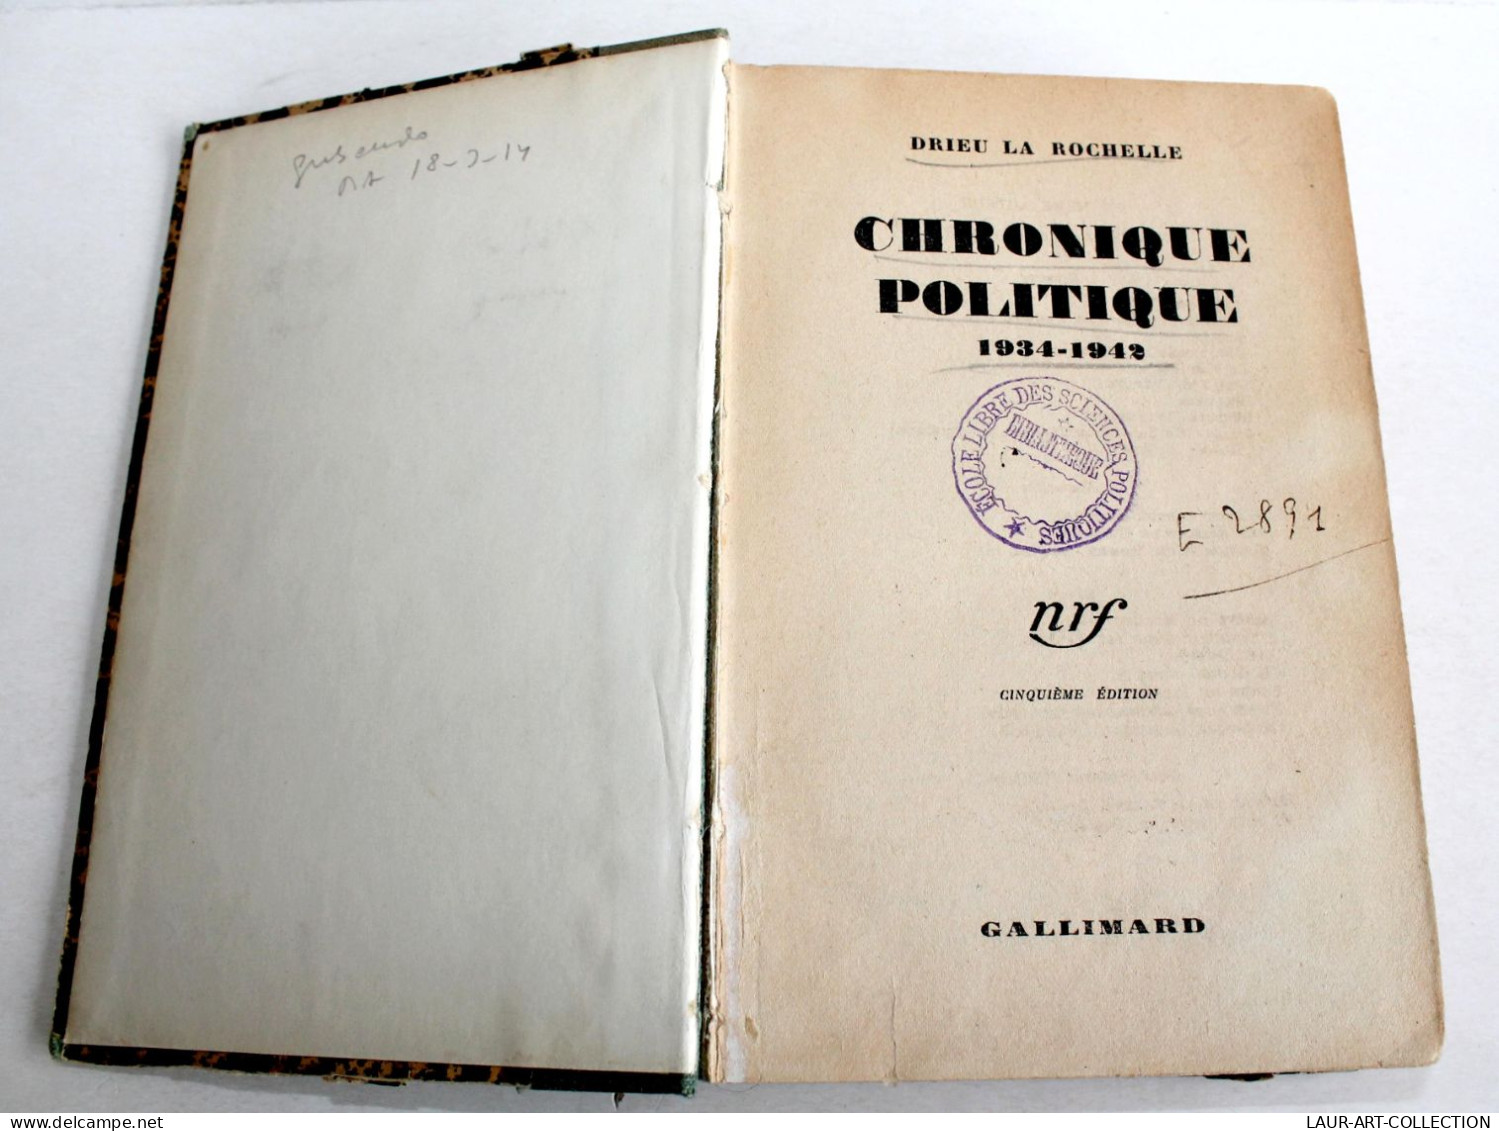 CHRONIQUE POLITIQUE 1934-1942 Par DRIEU LA ROCHELLE, 5e EDITION 1943 GALLIMARD / ANCIEN LIVRE XXe SIECLE (2603.131) - Politik